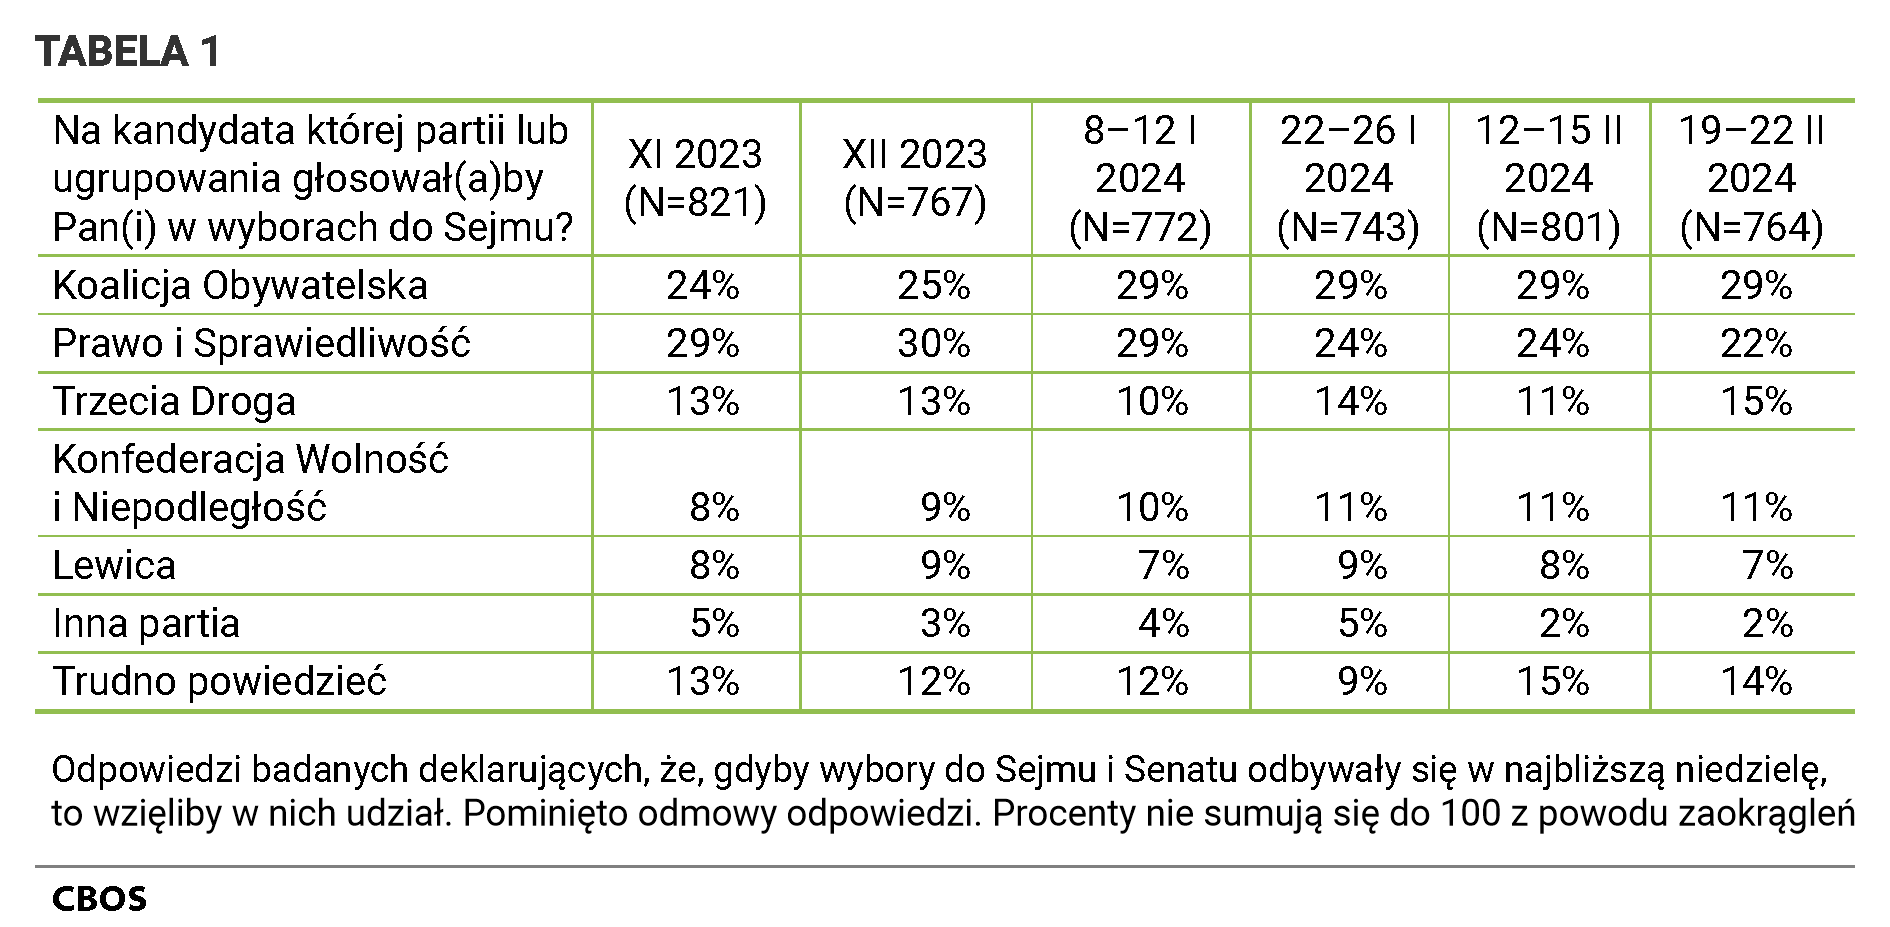 Tabela 1. Na kandydata której partii lub ugrupowania głosowałby Pan głosowałaby Pani w wyborach do Sejmu? listopad 2023 (N=821) Koalicja Obywatelska - 24%; Prawo i Sprawiedliwość - 29%; Trzecia Droga - 13%; Konfederacja Wolność i Niepodległość - 8%; Lewica - 8%; Inna partia - 5%; Trudno powiedzieć - 13%;  grudzień 2023 (N=767) Koalicja Obywatelska - 25%; Prawo i Sprawiedliwość - 30%; Trzecia Droga - 13%; Konfederacja Wolność i Niepodległość - 9%; Lewica - 9%; Inna partia - 3%; Trudno powiedzieć - 12%;  8–12 stycznia 2024 (N=772) Koalicja Obywatelska - 29%; Prawo i Sprawiedliwość - 29%; Trzecia Droga - 10%; Konfederacja Wolność i Niepodległość - 10%; Lewica - 7%; Inna partia - 4%; Trudno powiedzieć - 12%;  22–26 stycznia 2024 (N=743) Koalicja Obywatelska - 29%; Prawo i Sprawiedliwość - 24%; Trzecia Droga - 14%; Konfederacja Wolność i Niepodległość - 11%; Lewica - 9%; Inna partia - 5%; Trudno powiedzieć - 9%;  12–15 lutego  2024 (N=801) Koalicja Obywatelska - 29%; Prawo i Sprawiedliwość - 24%; Trzecia Droga - 11%; Konfederacja Wolność i Niepodległość - 11%; Lewica - 8%; Inna partia - 2%; Trudno powiedzieć - 15%;  19–22 lutego 2024 (N=764) Koalicja Obywatelska - 29%; Prawo i Sprawiedliwość - 22%; Trzecia Droga - 15%; Konfederacja Wolność i Niepodległość - 11%; Lewica - 7%; Inna partia - 2%; Trudno powiedzieć - 14%; Odpowiedzi badanych deklarujących, że, gdyby wybory do Sejmu i Senatu odbywały się w najbliższą niedzielę, to wzięliby w nich udział. Pominięto odmowy odpowiedzi. Procenty nie sumują się do 100 z powodu zaokrągleń.